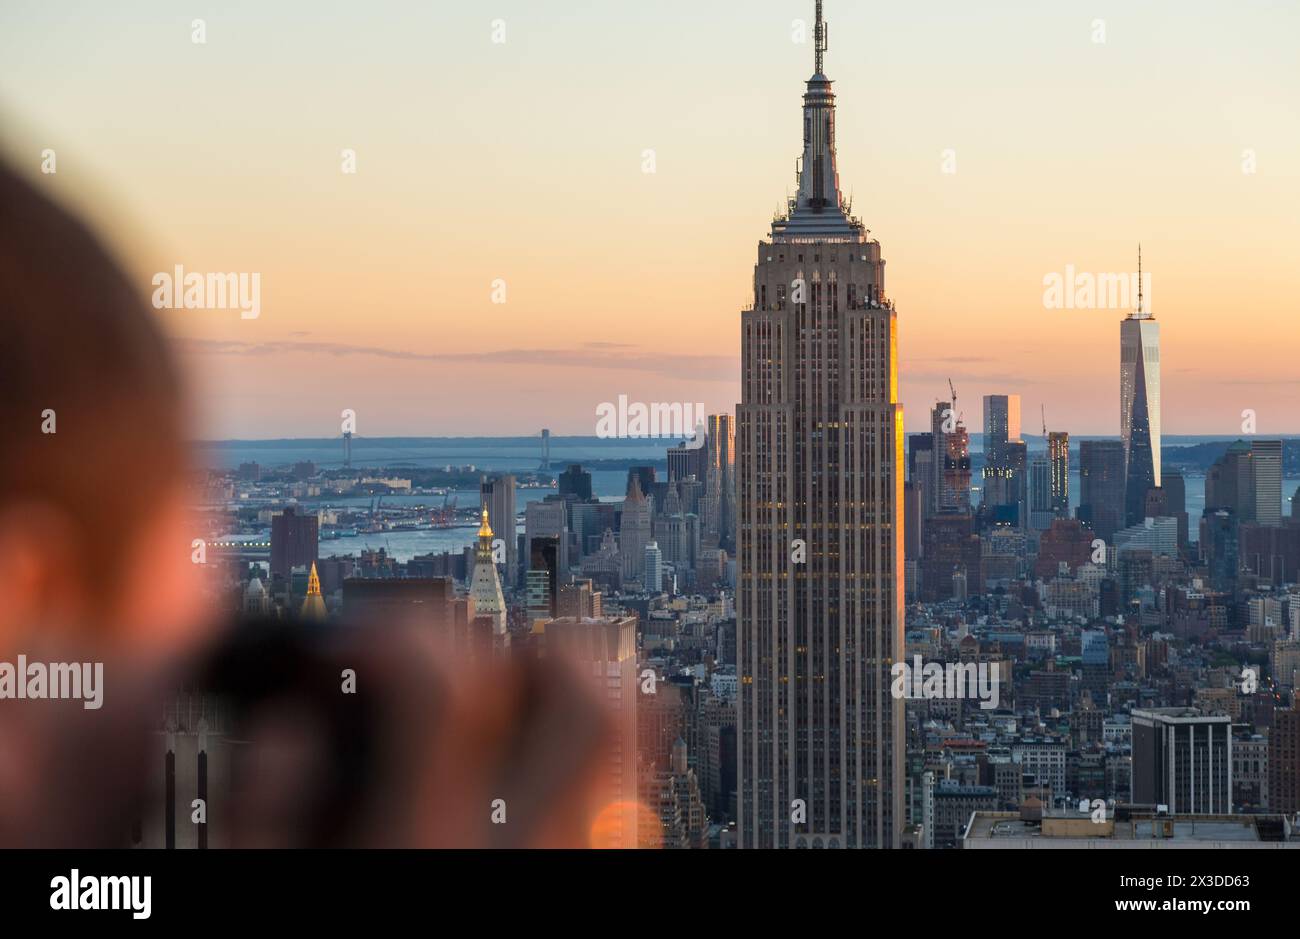 Uomo con fotocamera che fotografa l'Empire State Building e lo skyline di Manhattan, New York, Stati Uniti Foto Stock